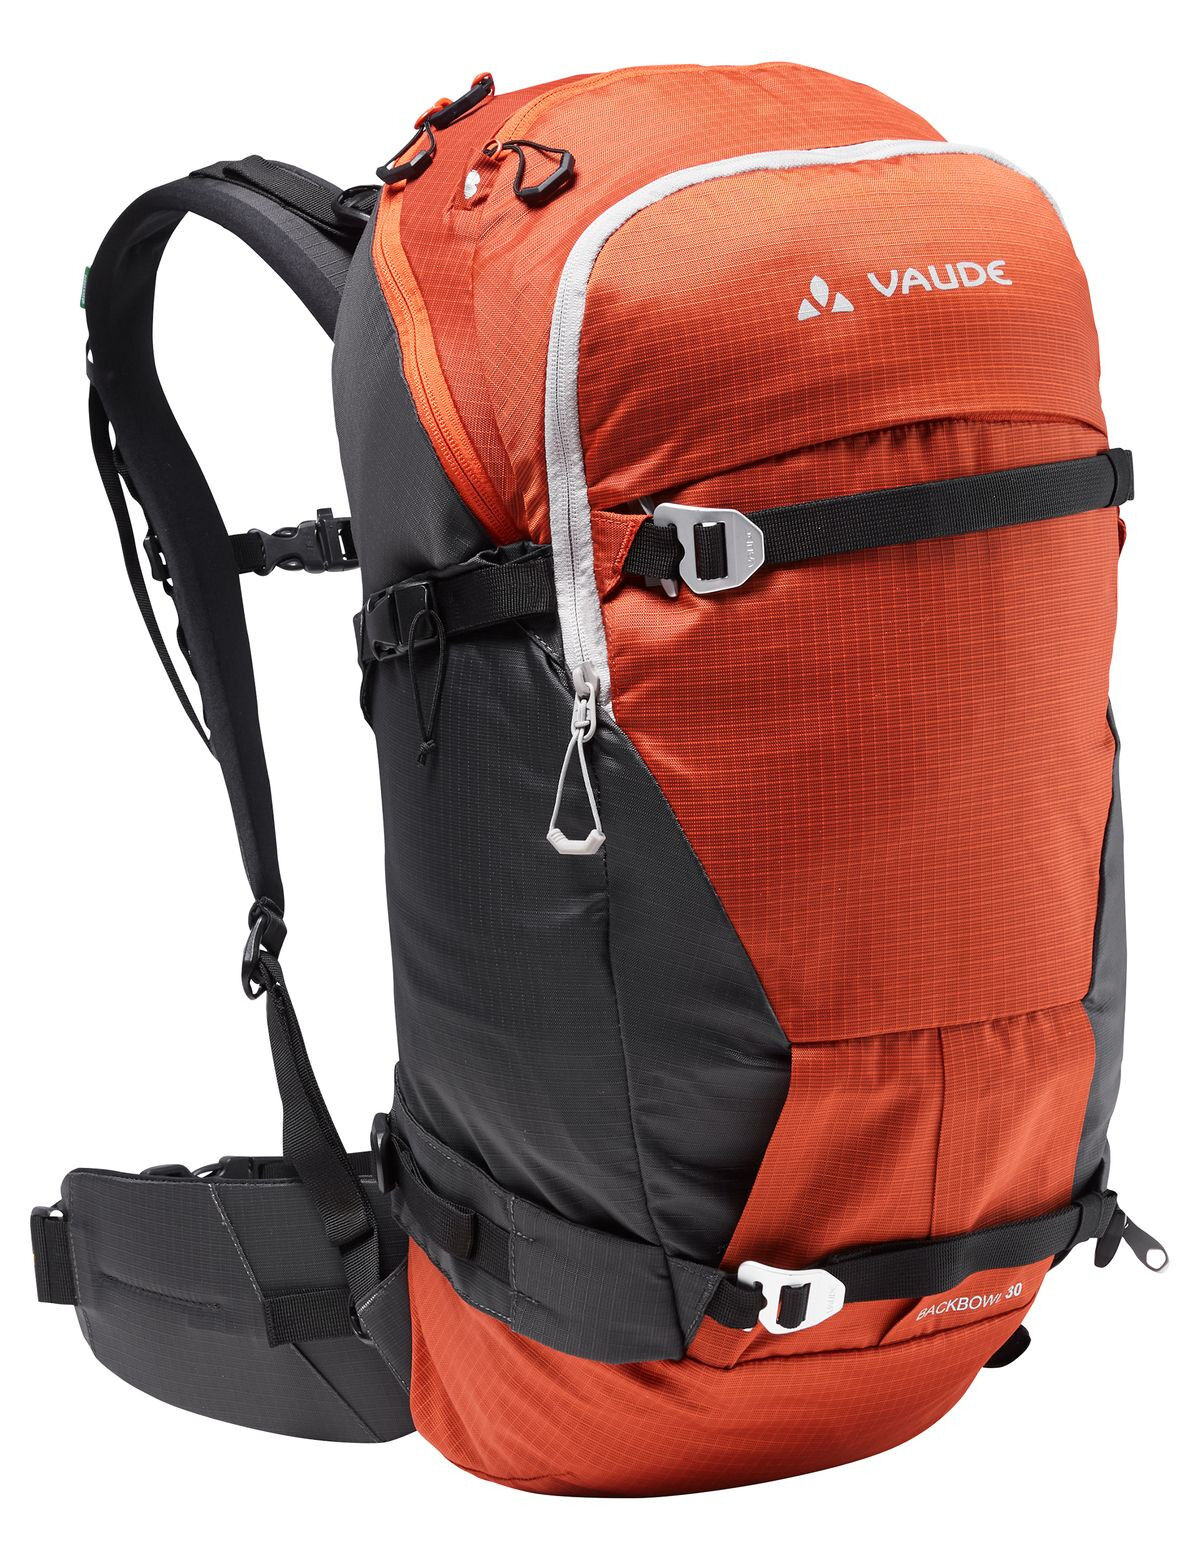 Vaude Back Bowl 30 - Ski Touring backpack